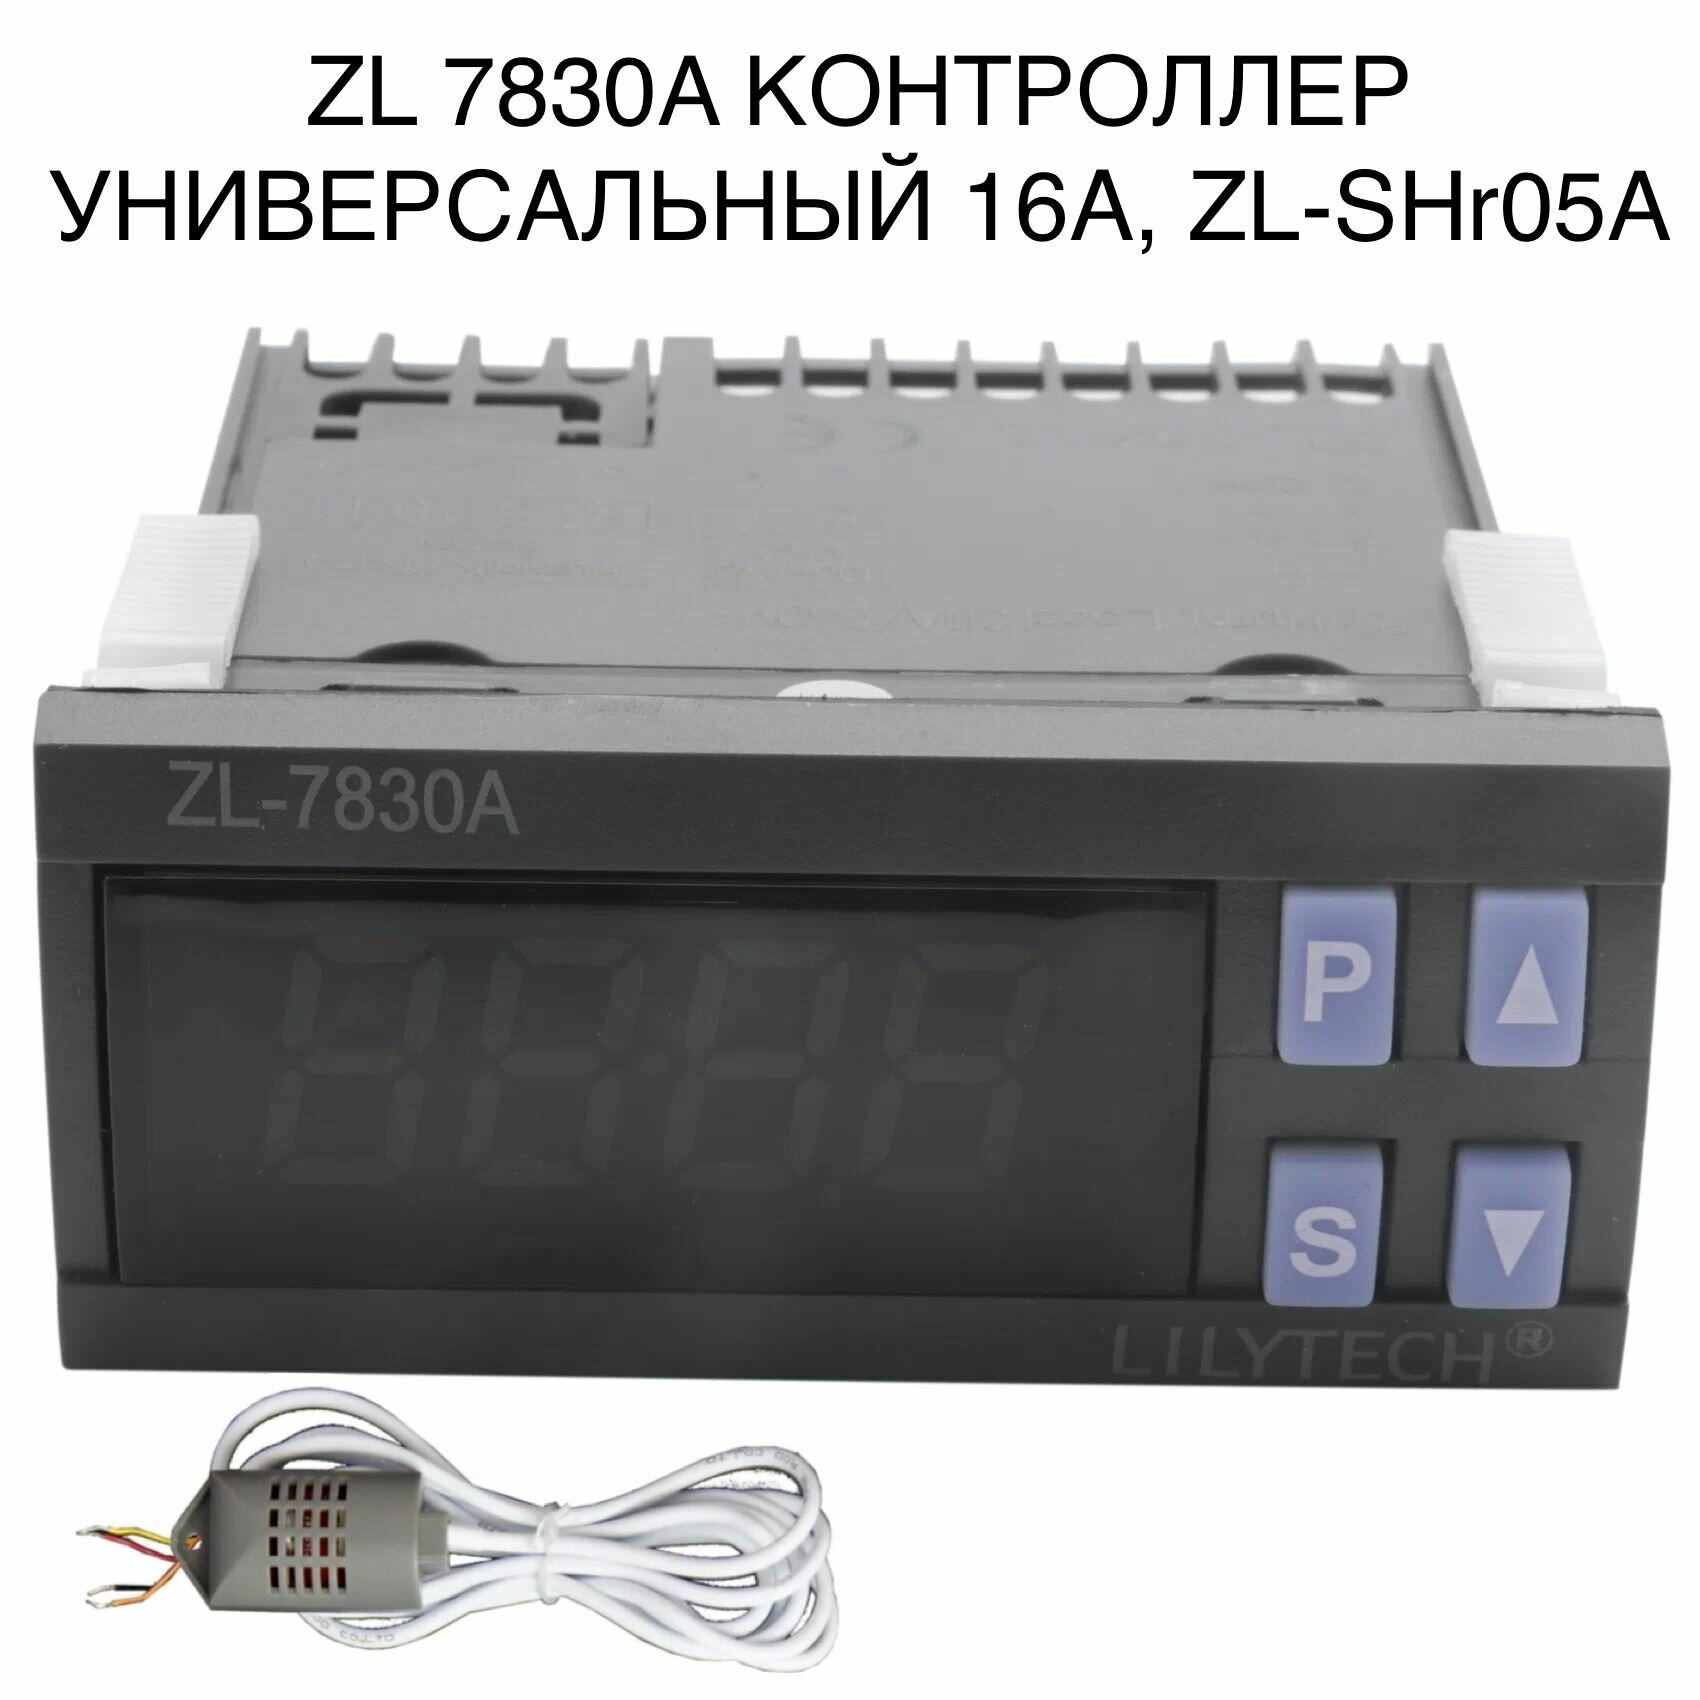 ZL 7830A Для инкубатора многофункциональный, универсальный автоматический контроллер - фотография № 1